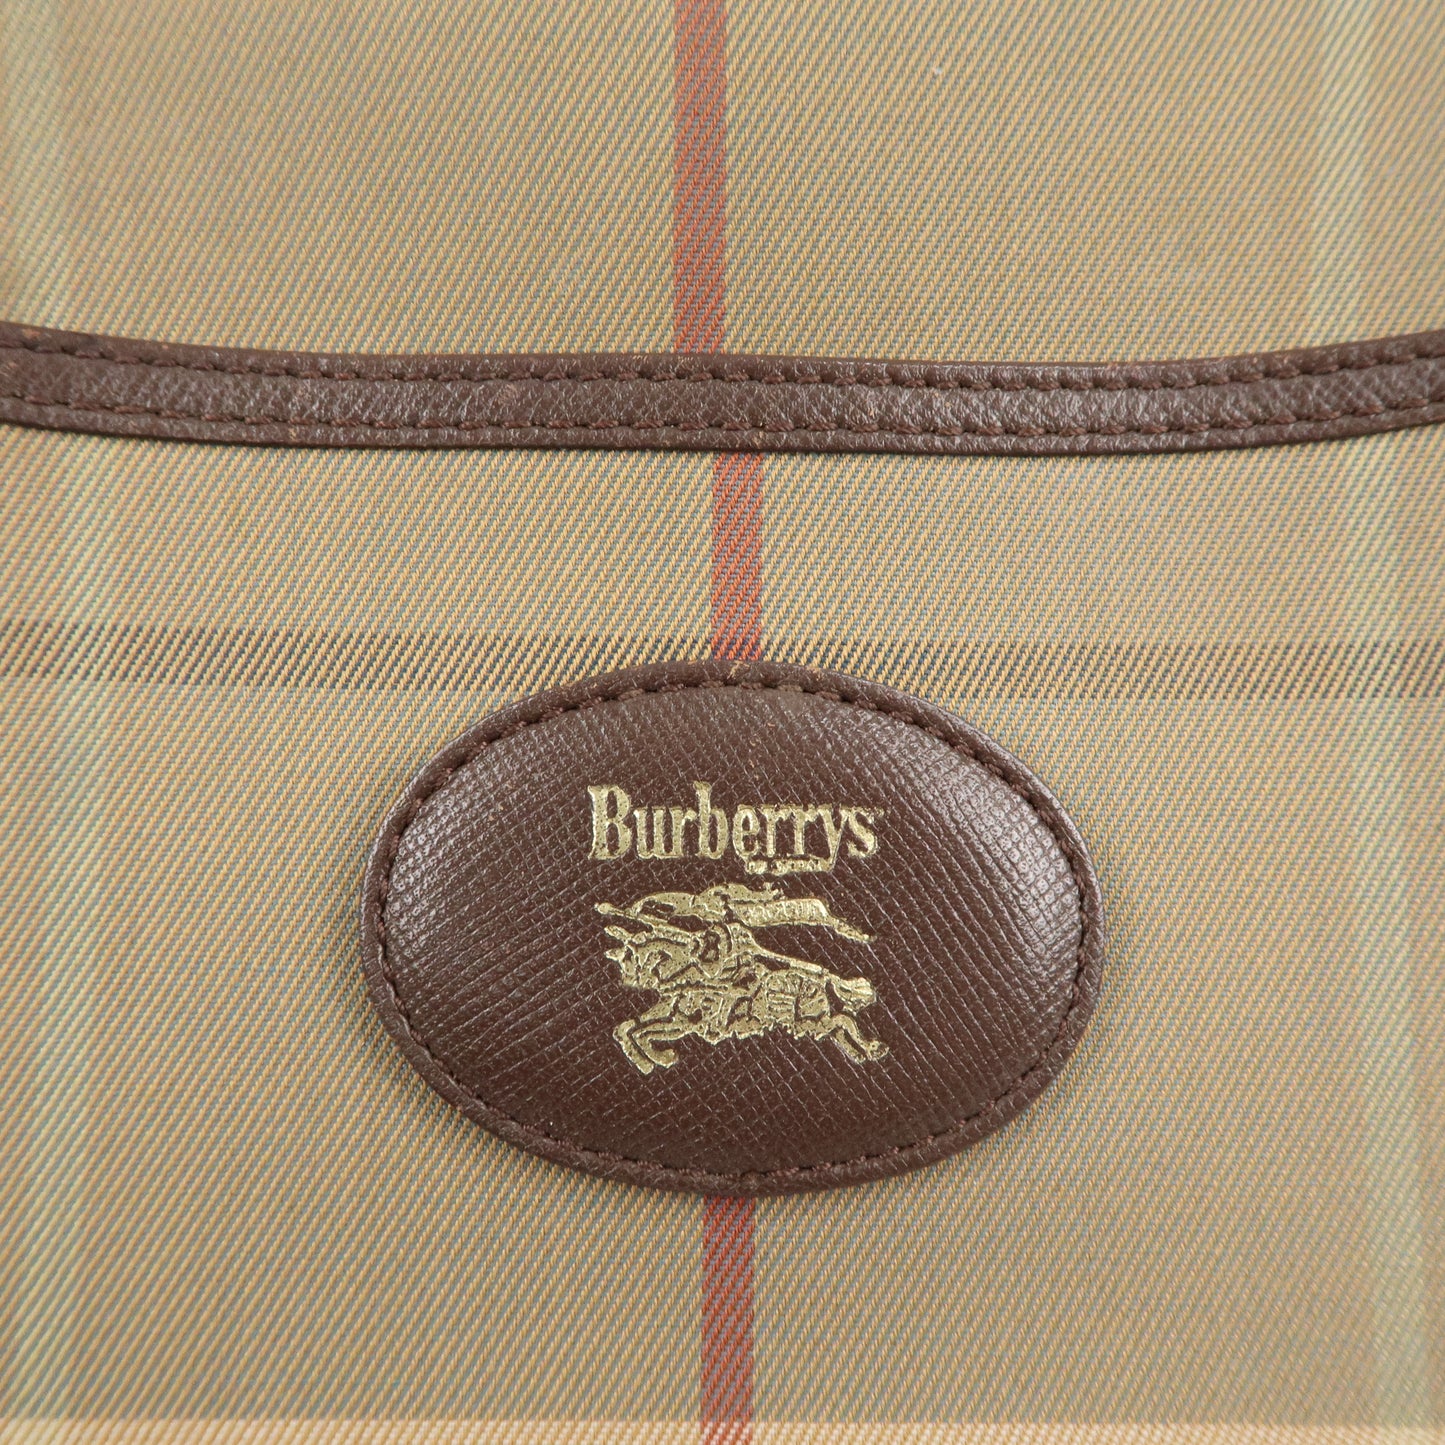 BURBERRY Canvas Leather Shoulder Bag Crossbody Bag Beige Brown